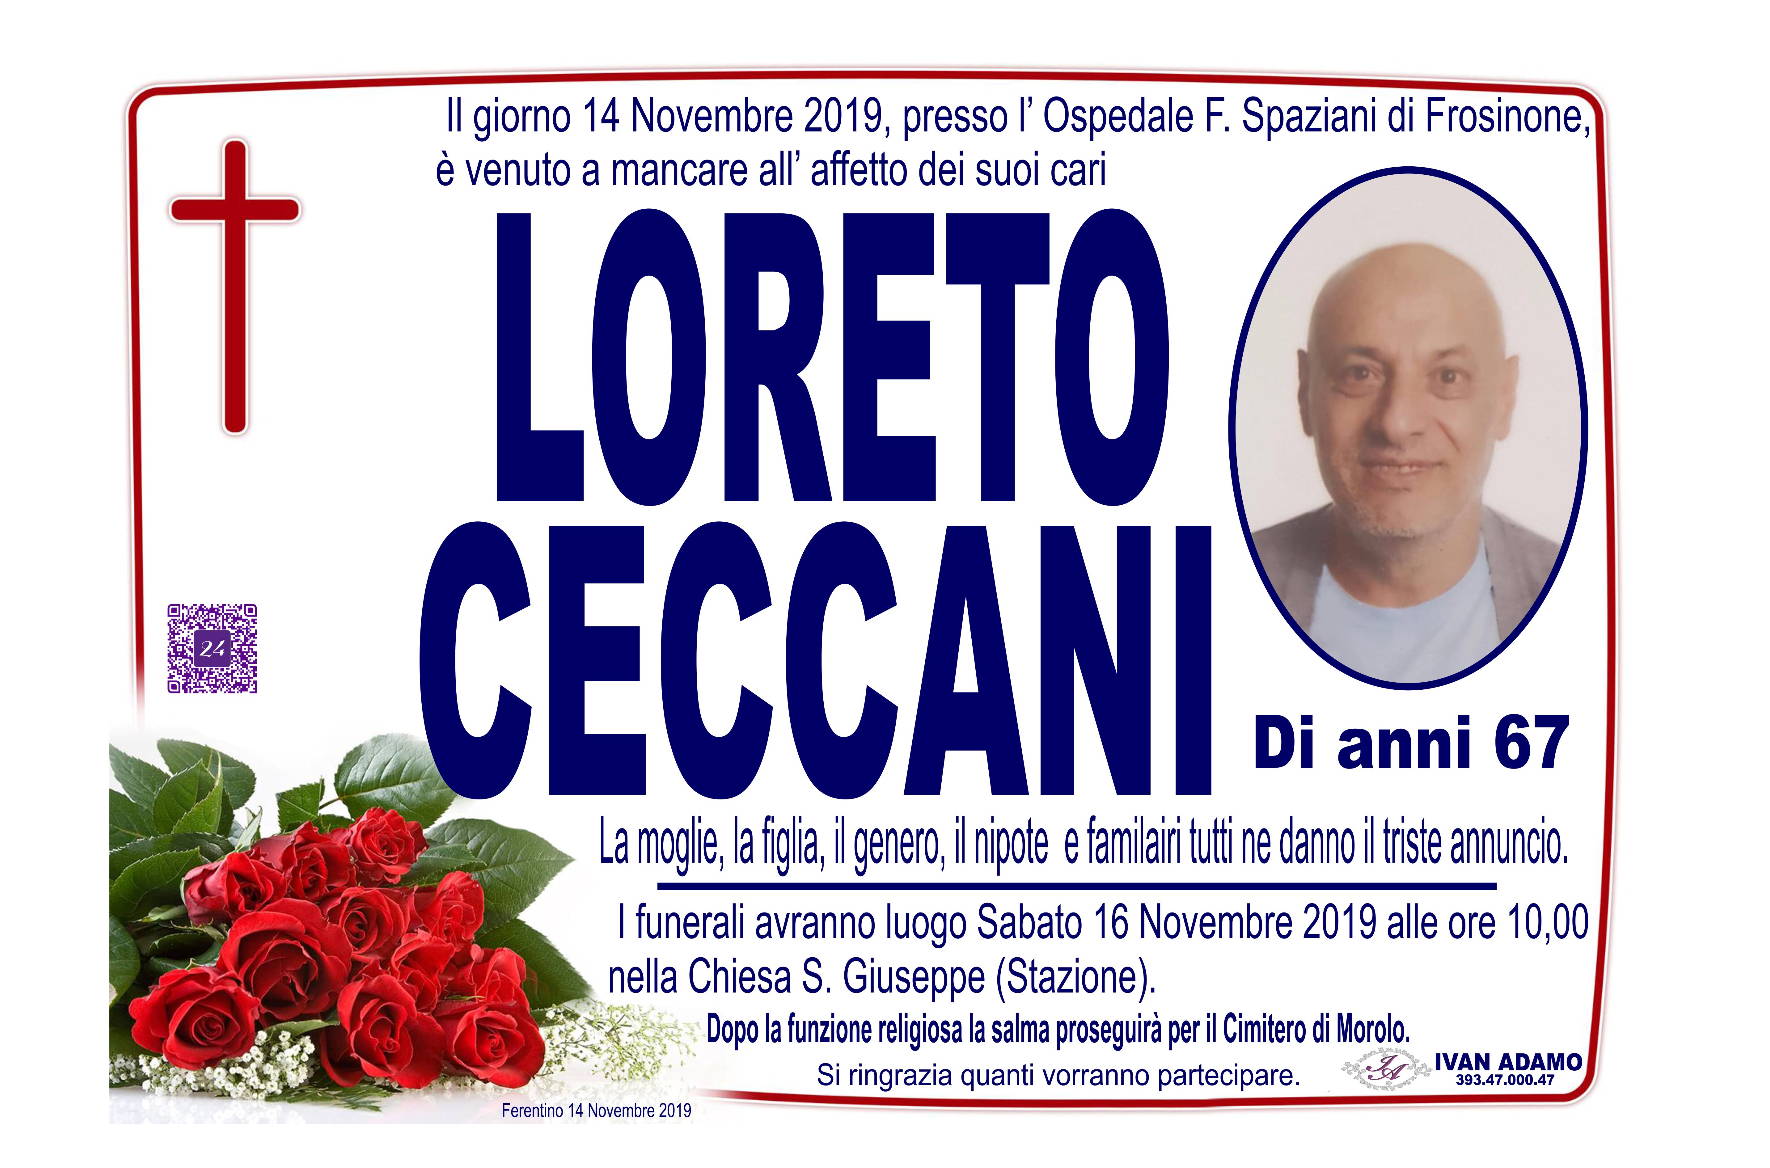 Loreto Ceccani